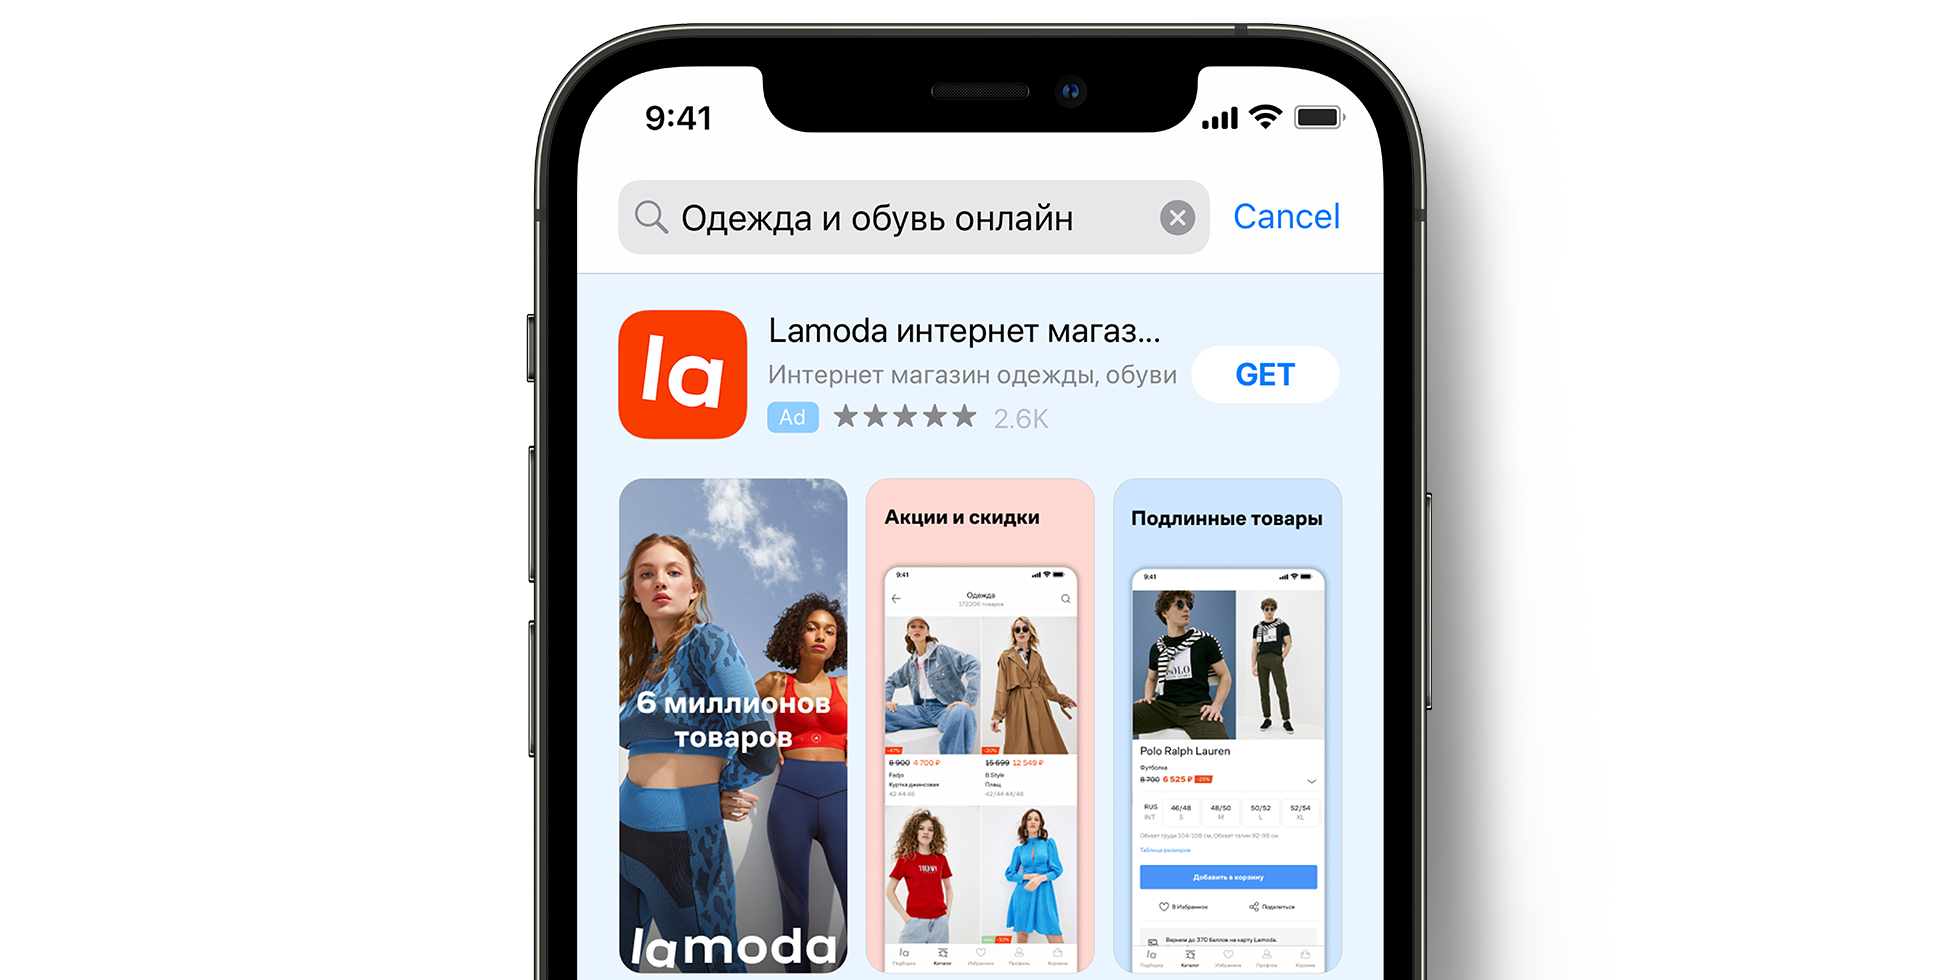 App Store 上的 Lamoda 广告